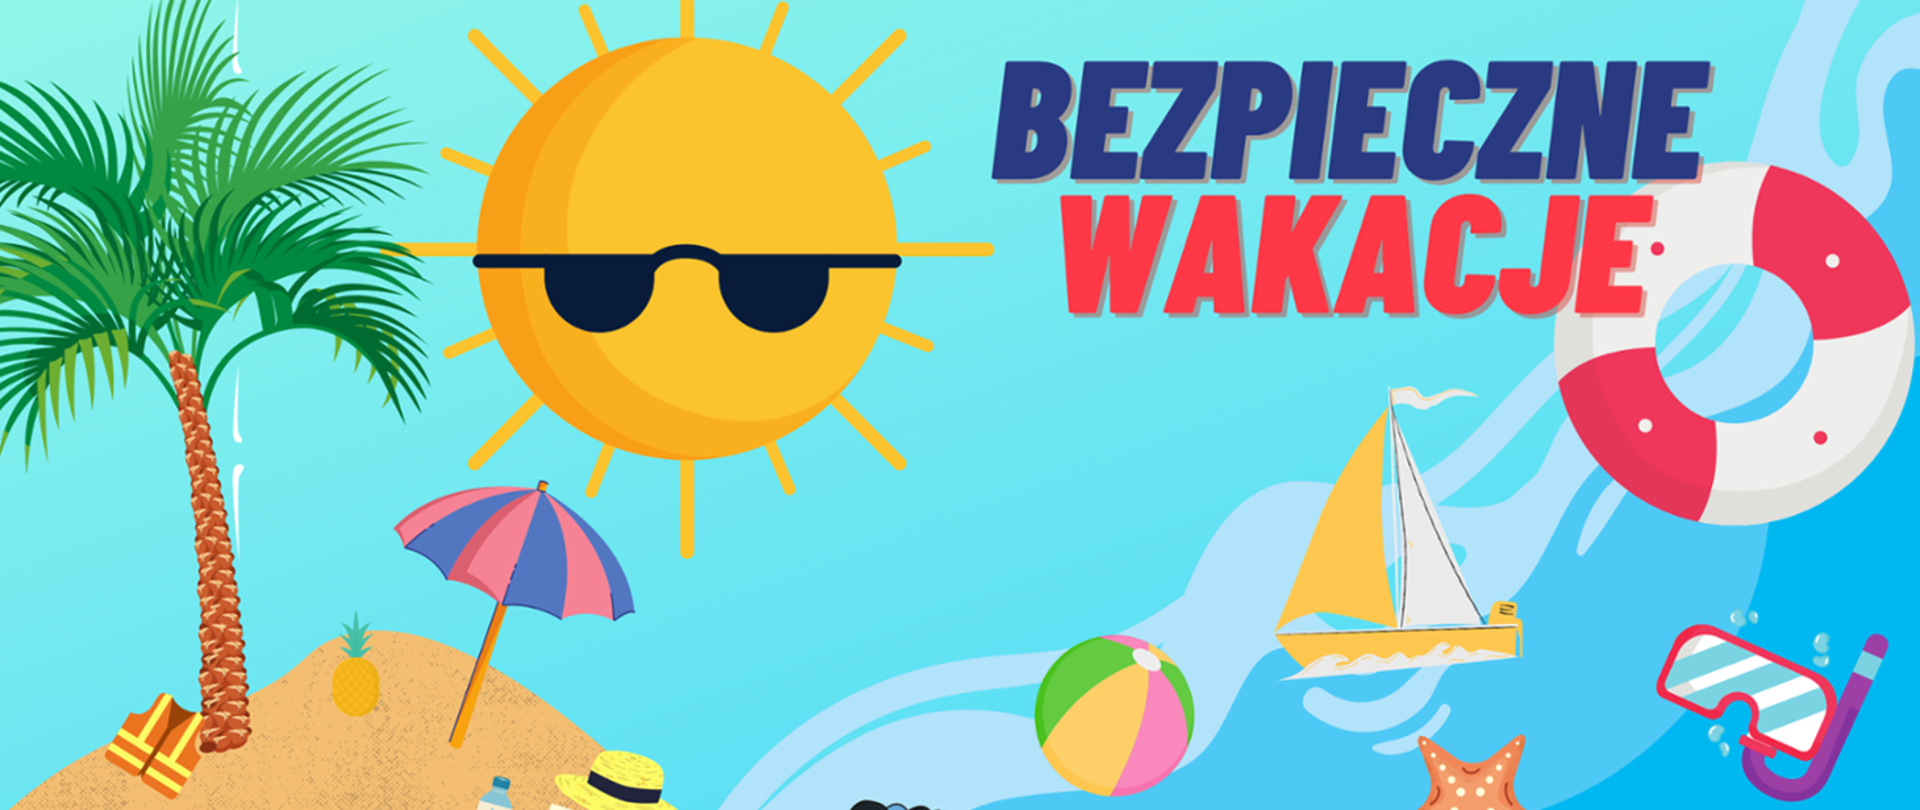 Zdjęcie przedstawia logo akcji "Bezpieczne wakacje" oraz atrybuty, które towarzyszą letniemu wypoczynkowi, m.in. (od lewej): palma, parasol, słońce w okularach przeciwsłonecznych, piłka plażowa, żaglówka, maska do nurkowania, koło ratunkowe